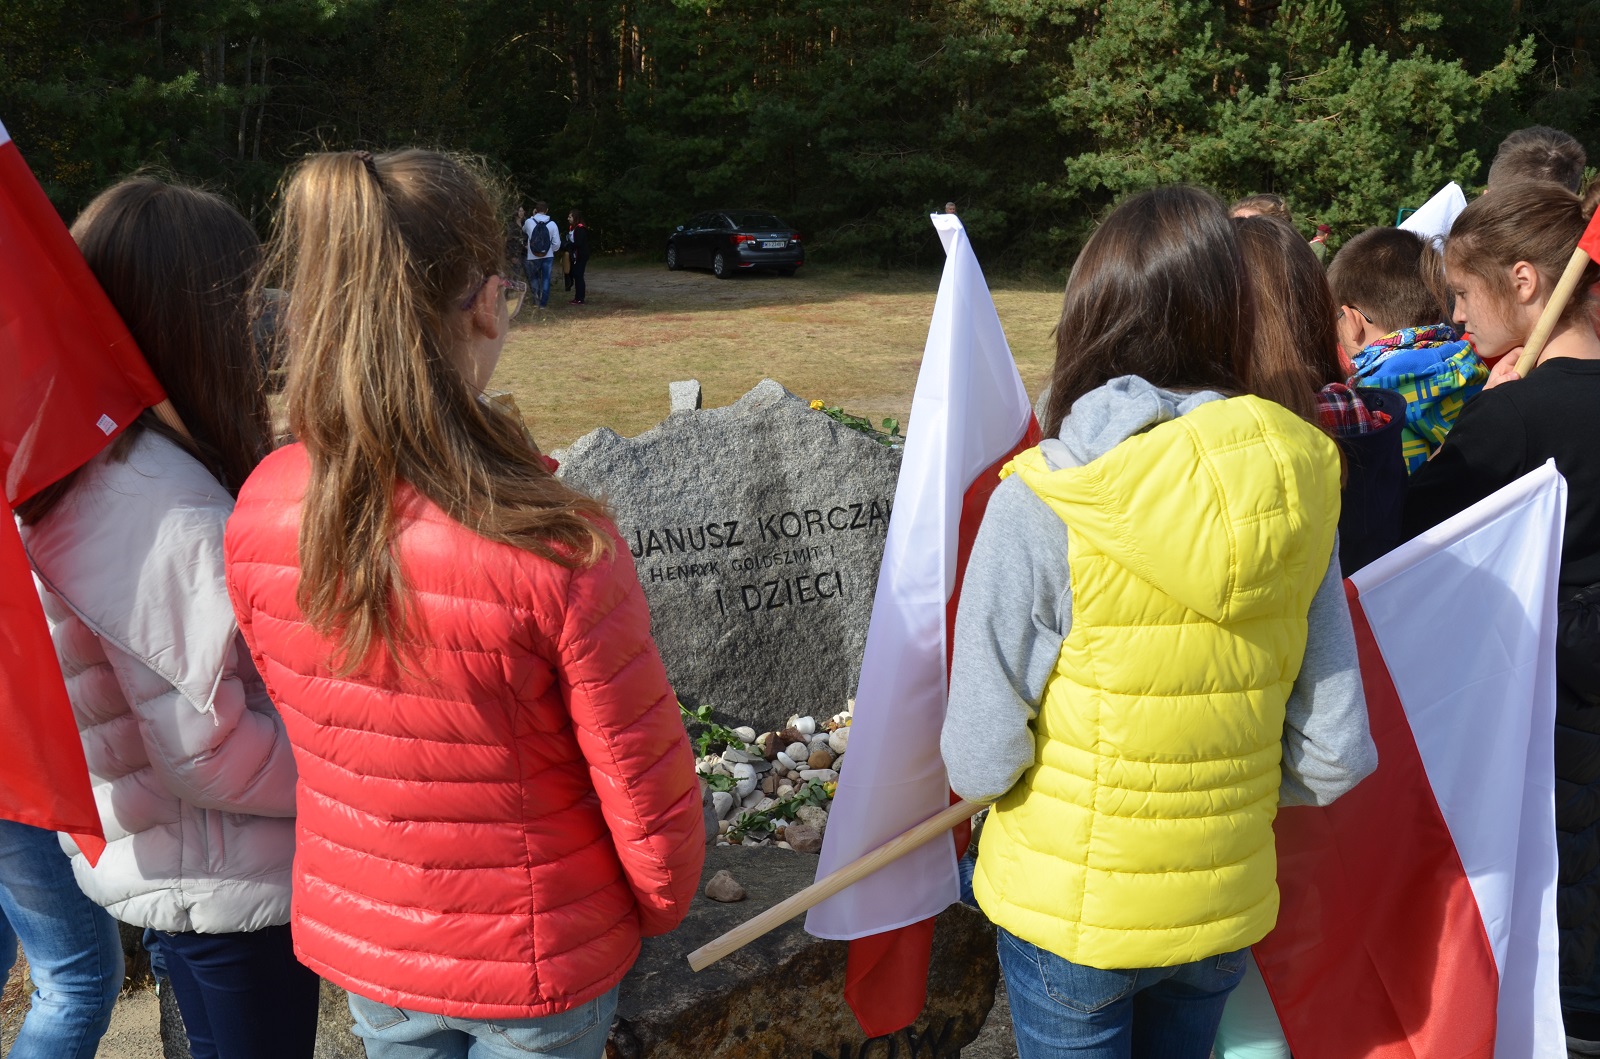 Jesteśmy razem - pamięci ofiar pomordowanych w Treblince. Grupa młodzieży stoi z flagami Polski przy jednym z nagrobków.